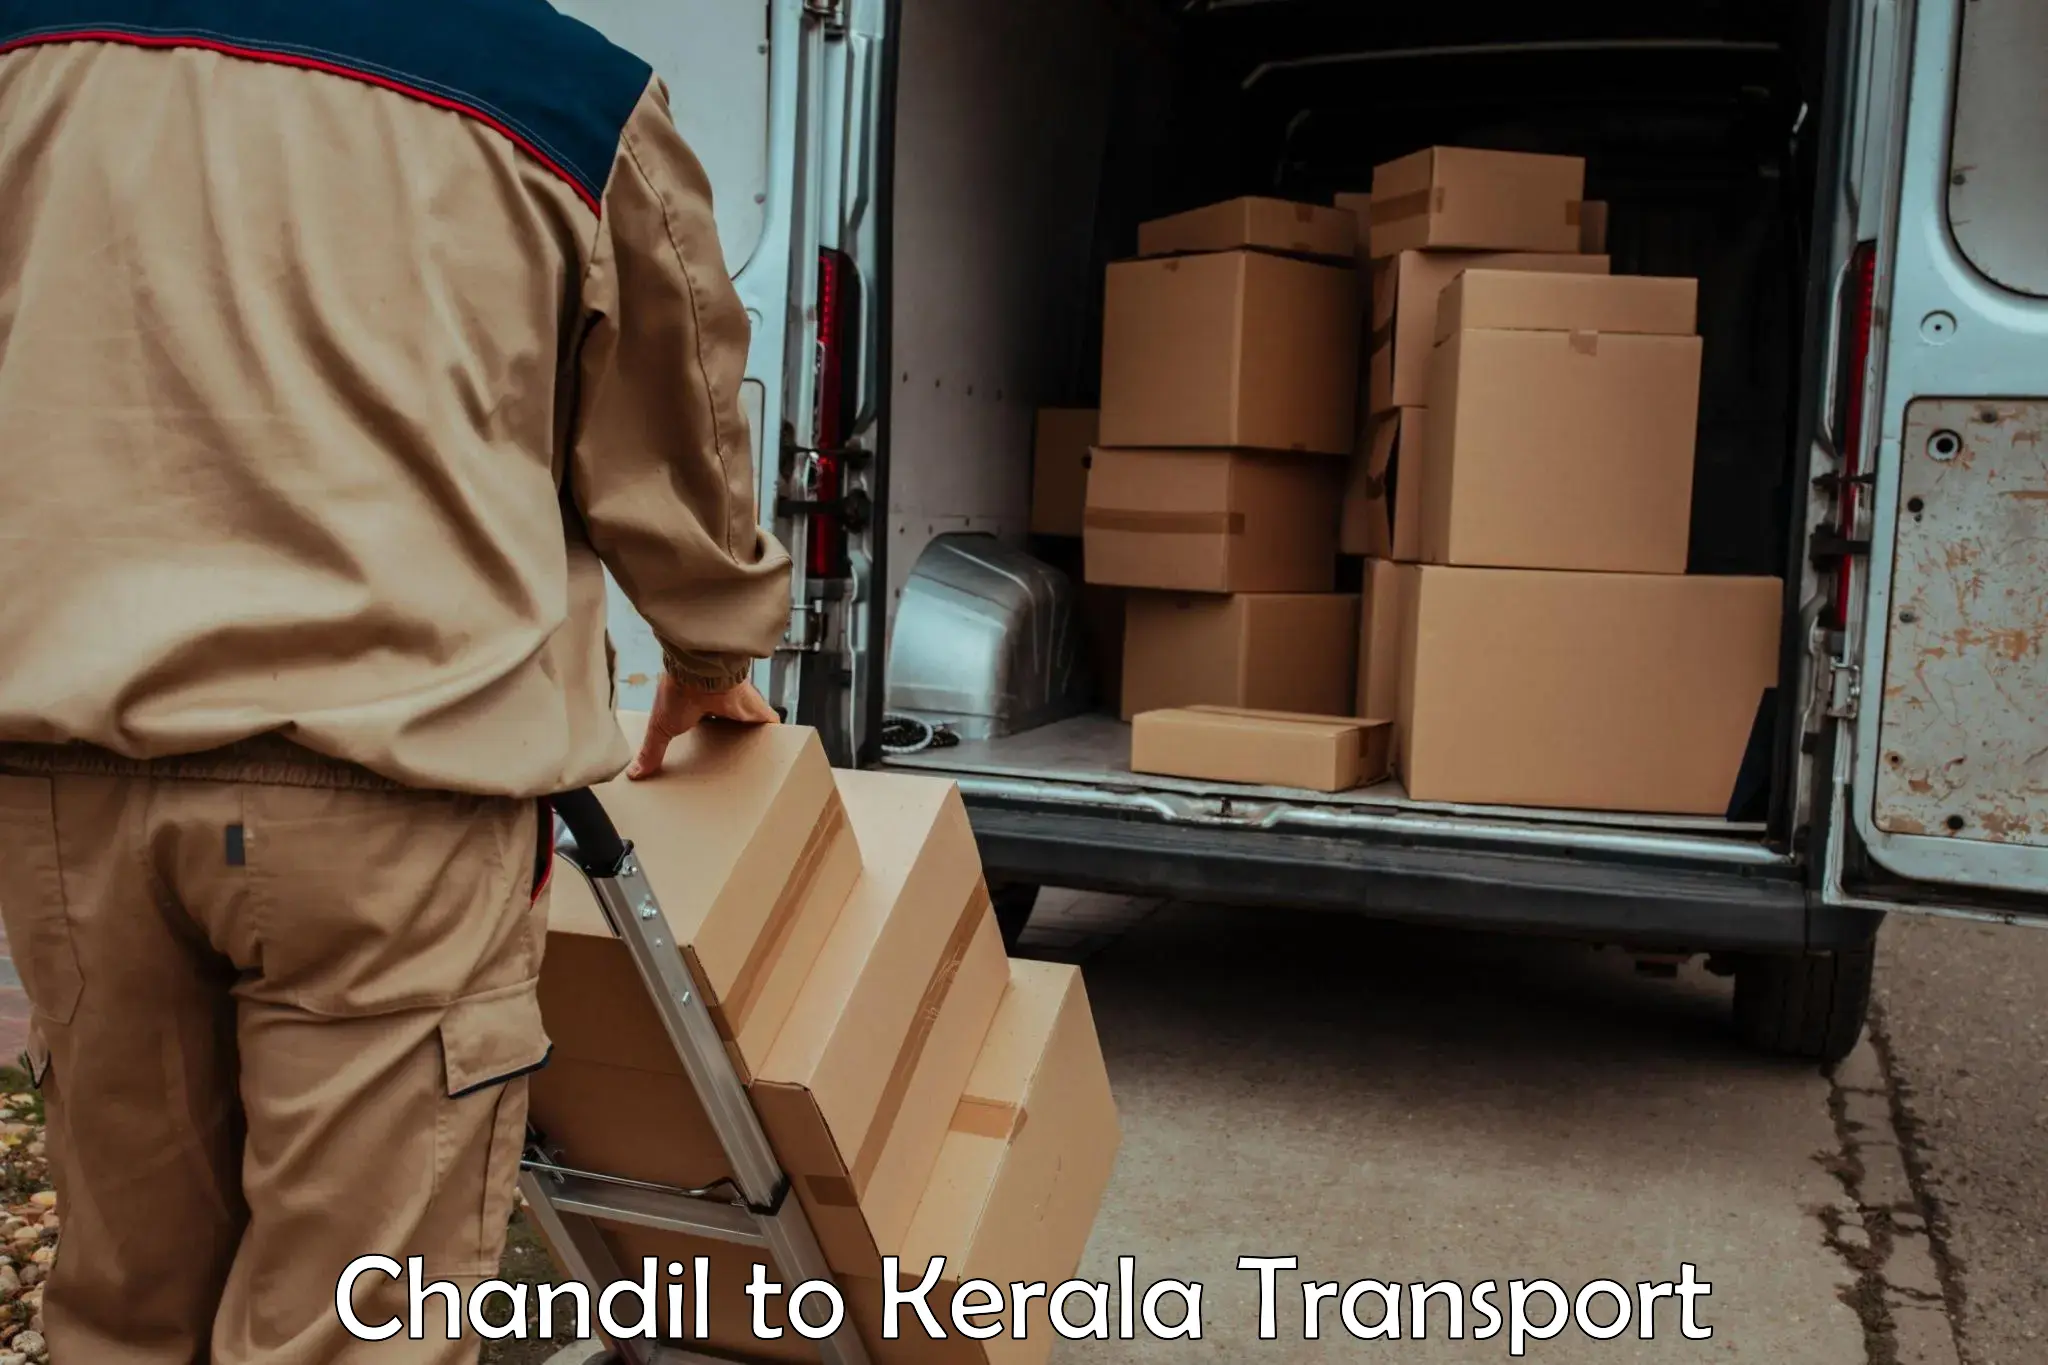 Nearest transport service Chandil to Thrissur